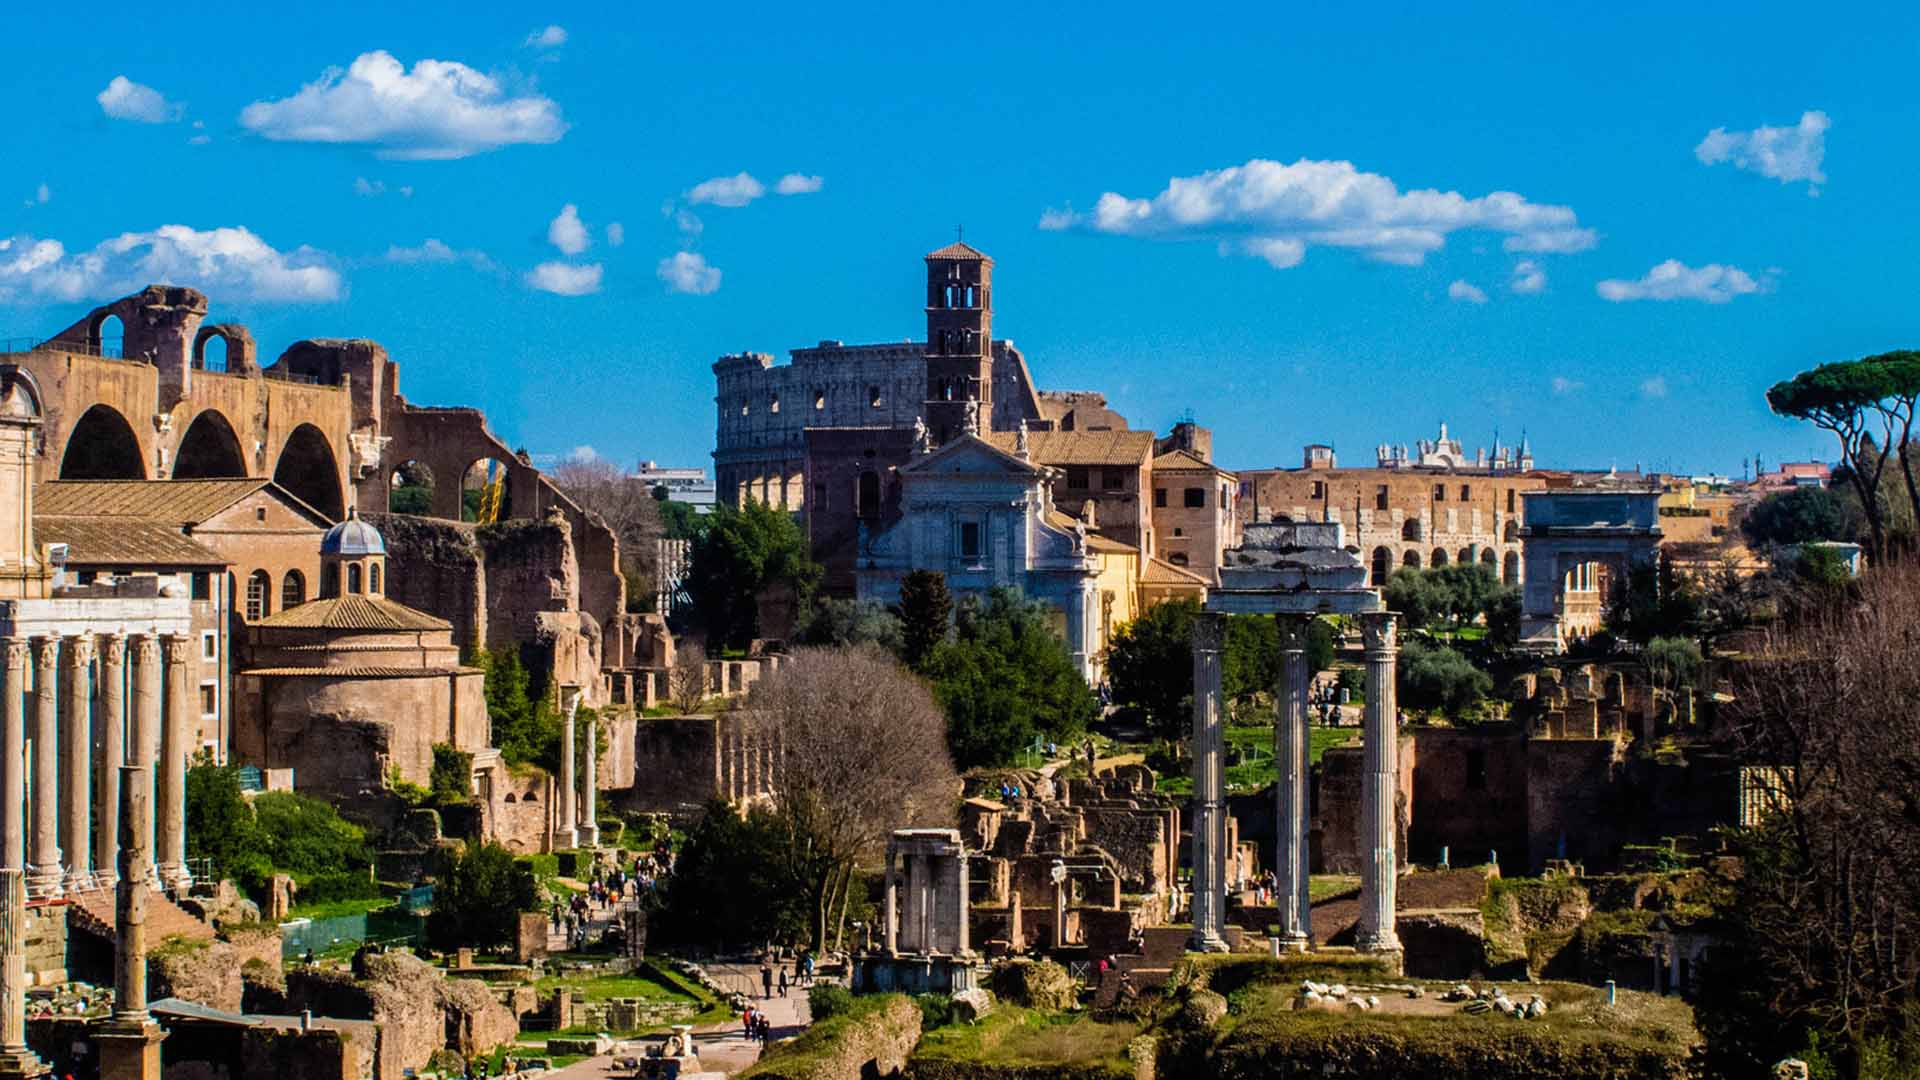 Vizitează Forumul Roman: 8 Repere, Sfaturi și excursii